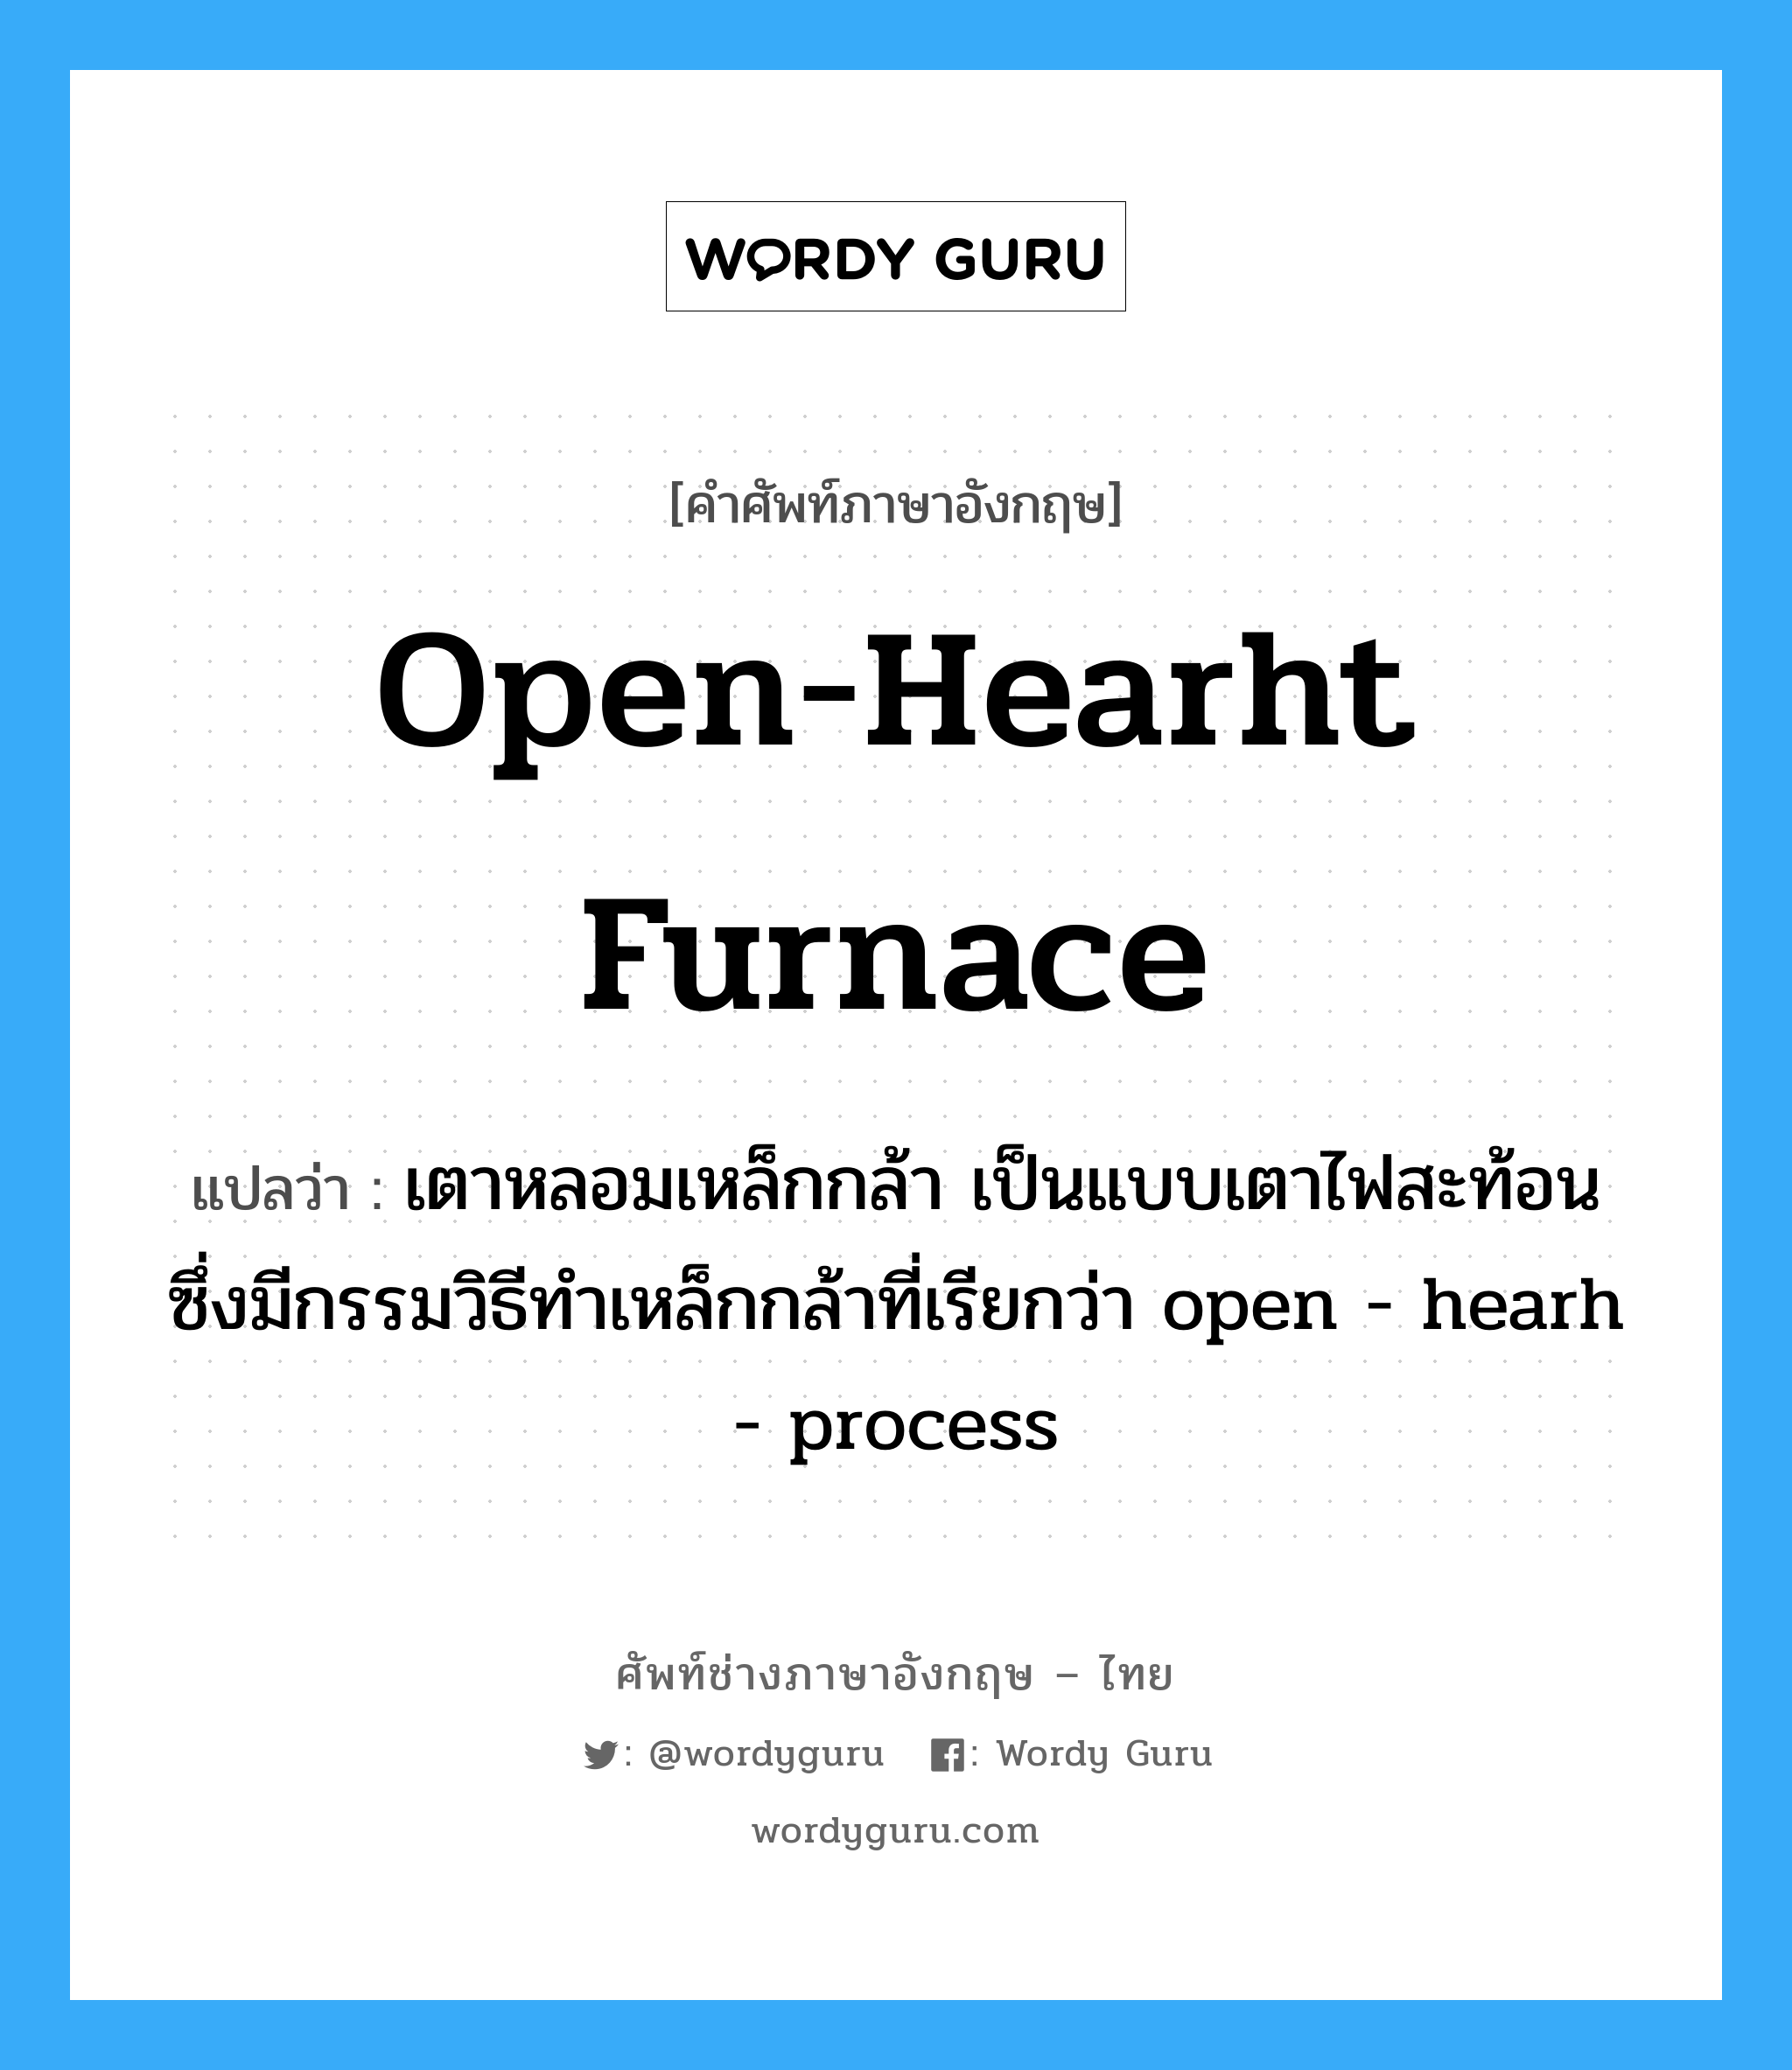 open-hearht furnace แปลว่า?, คำศัพท์ช่างภาษาอังกฤษ - ไทย open-hearht furnace คำศัพท์ภาษาอังกฤษ open-hearht furnace แปลว่า เตาหลอมเหล็กกล้า เป็นแบบเตาไฟสะท้อน ซึ่งมีกรรมวิธีทำเหล็กกล้าที่เรียกว่า open - hearh - process